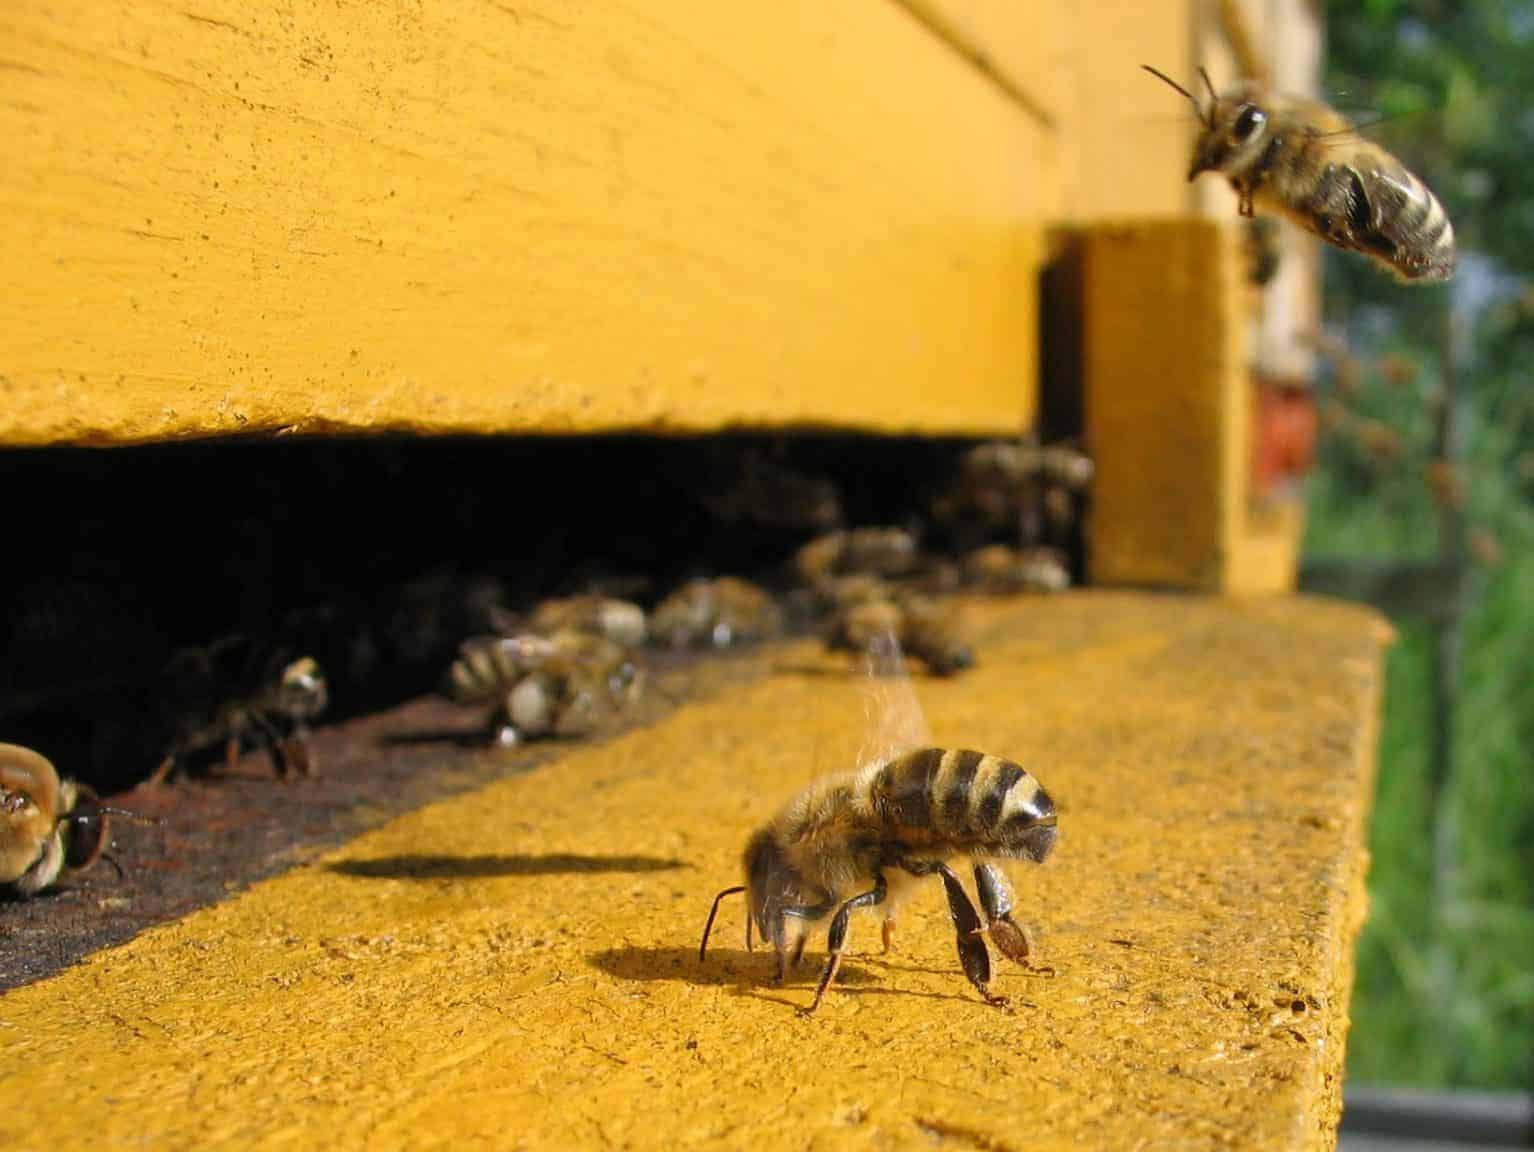 Honeybee cooling